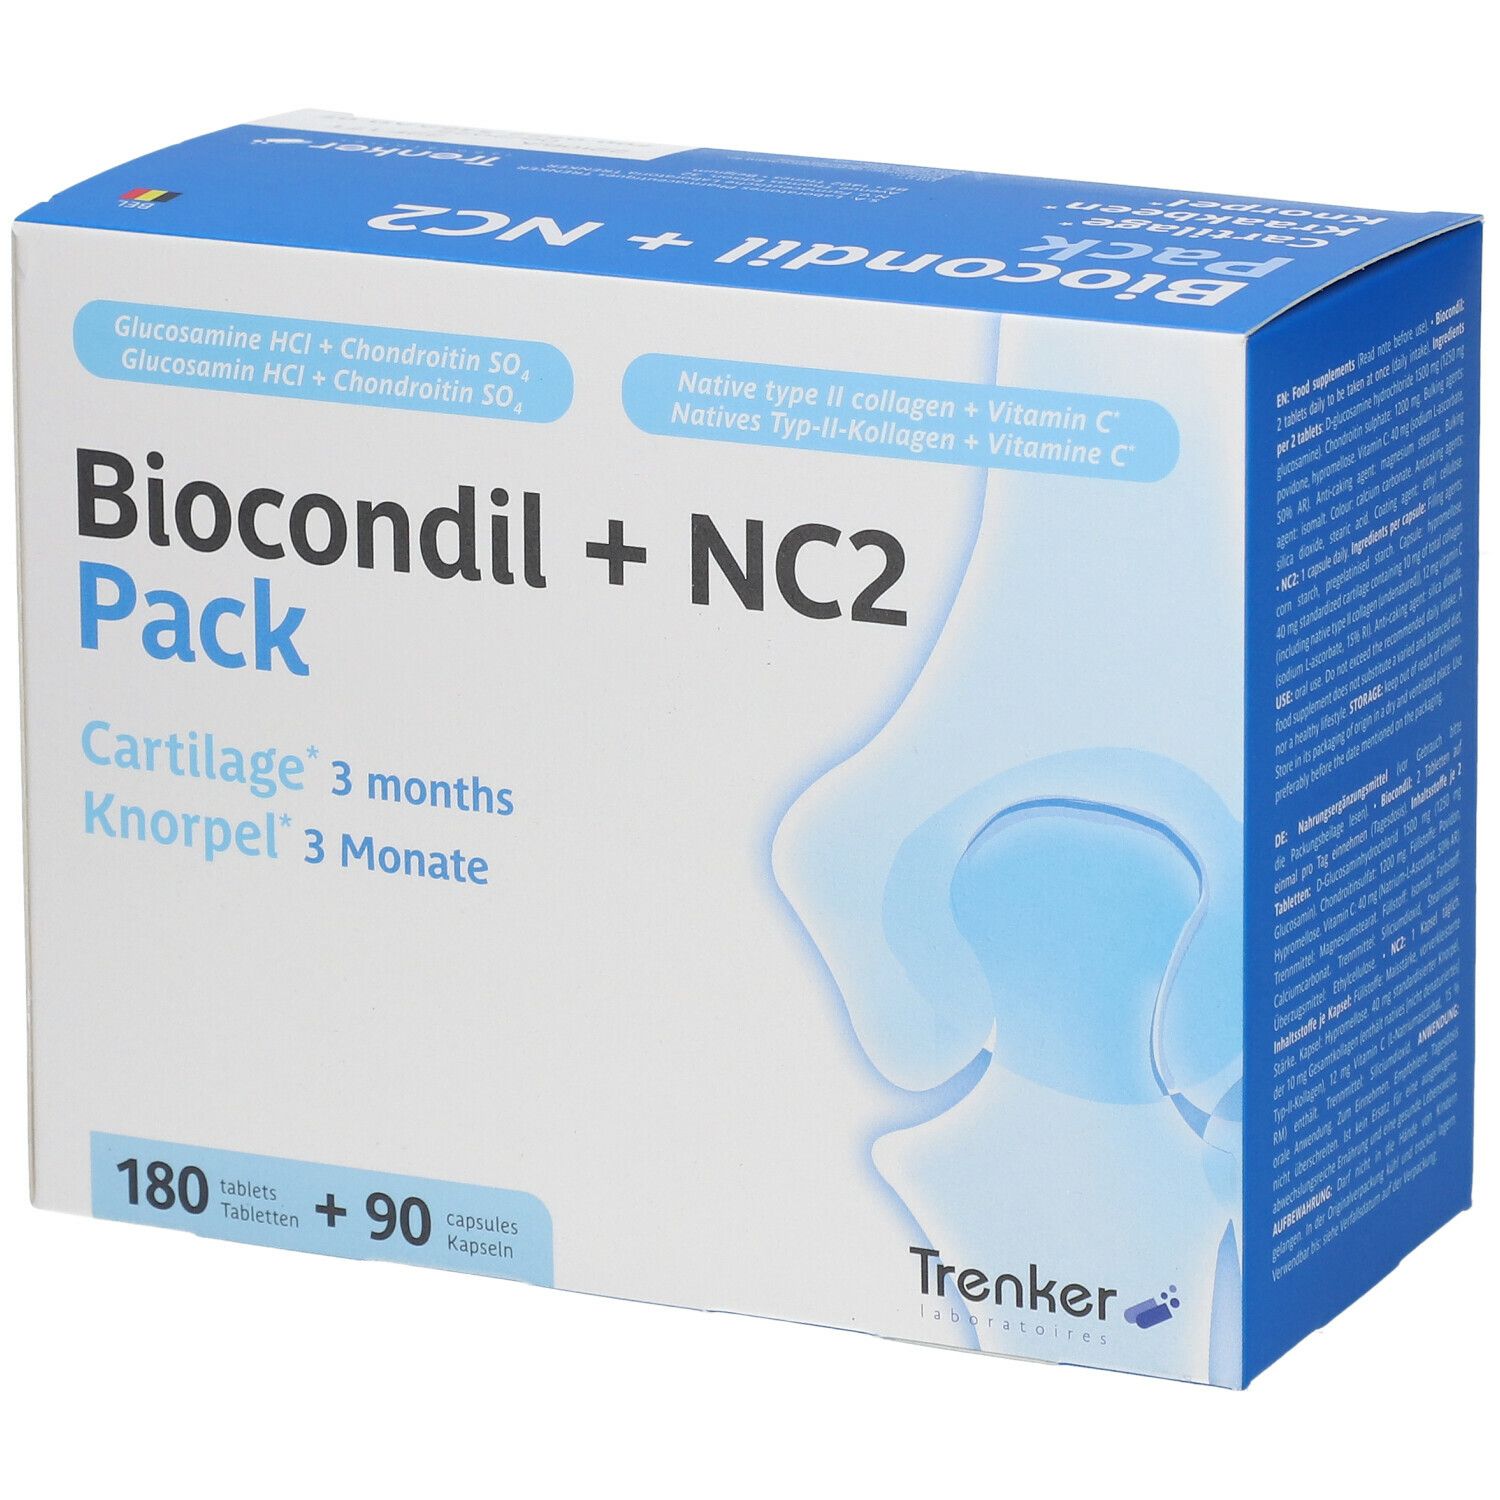 Biocondil + NC2 Pack